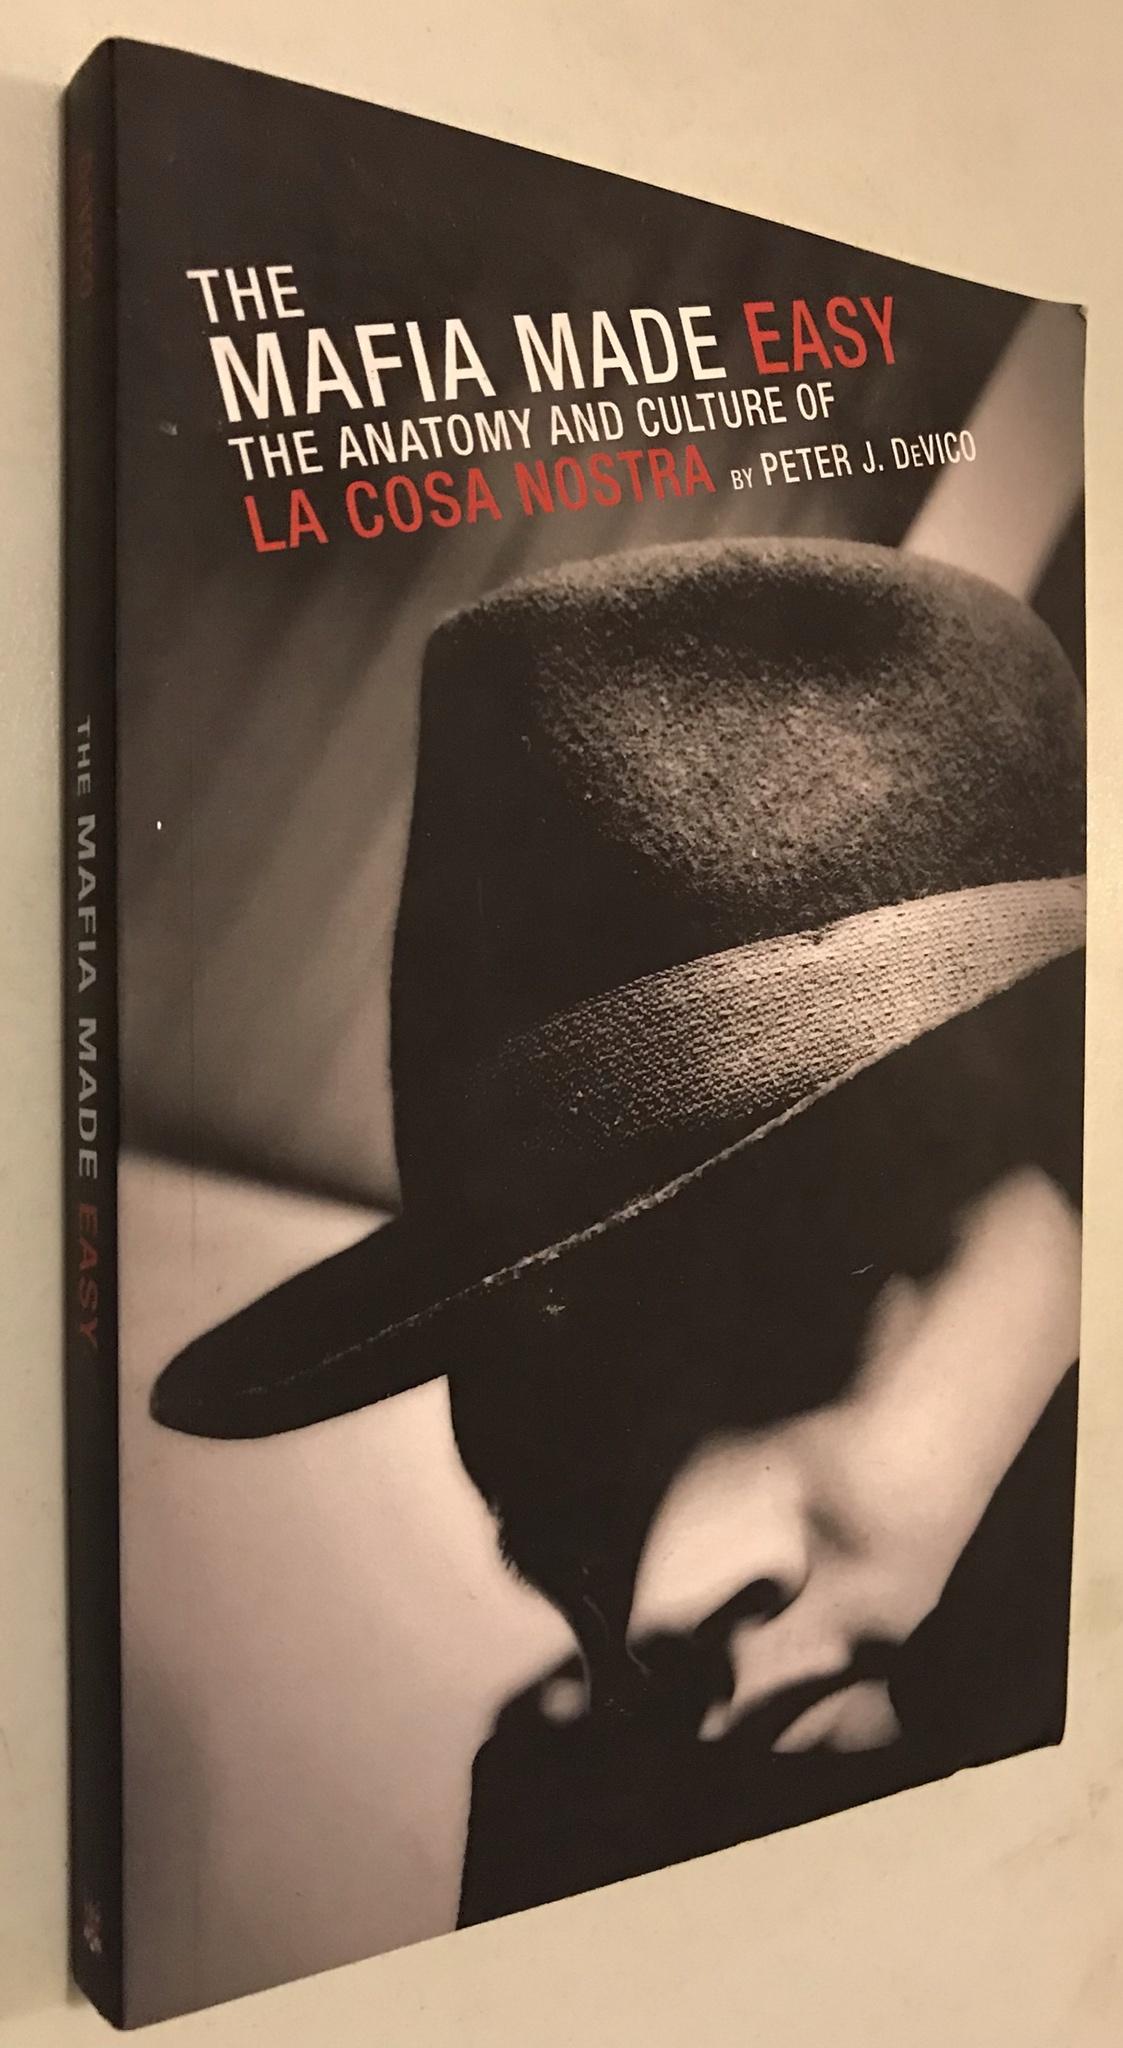 The Mafia Made Easy: The Anatomy and Culture of La Cosa Nostra - Peter J. Devico